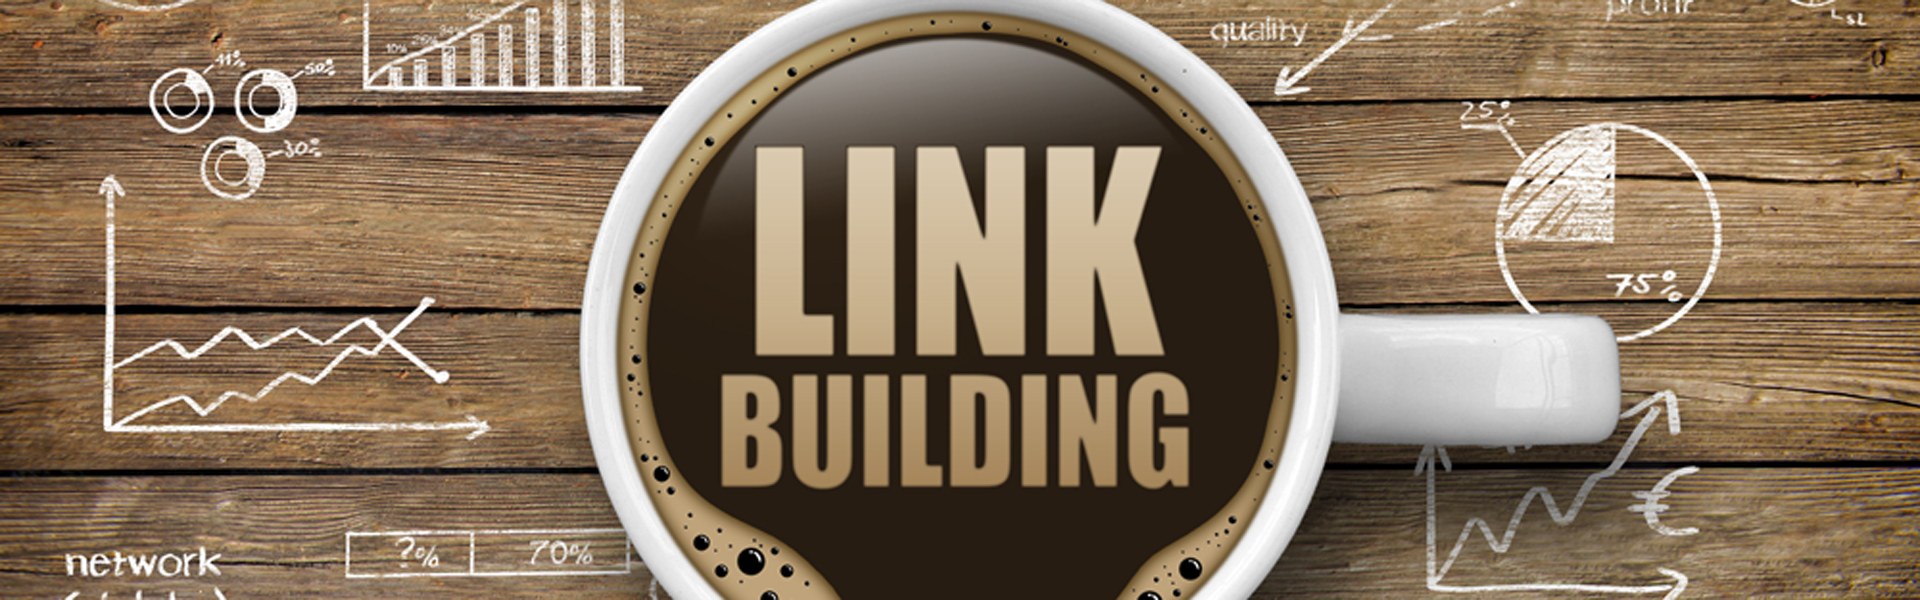 link building tactics 2